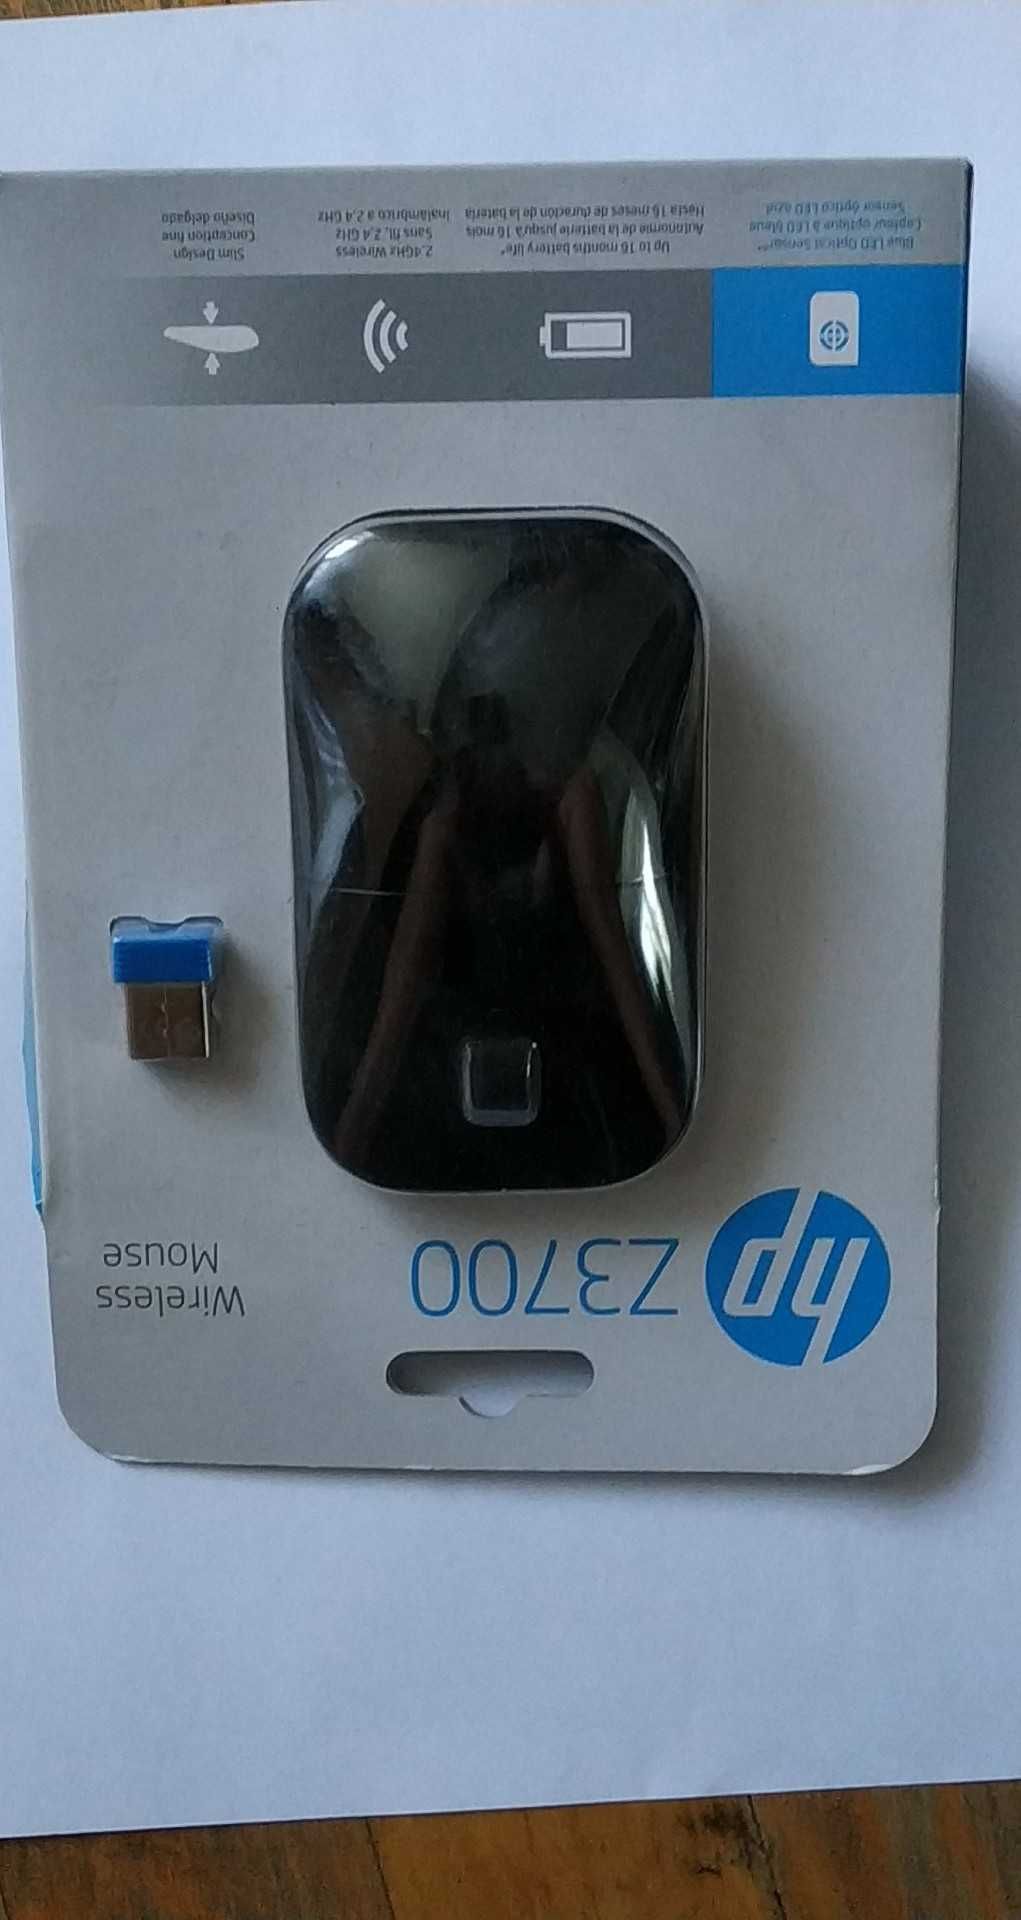 Mysz HP Z3700 - świetna, nowa